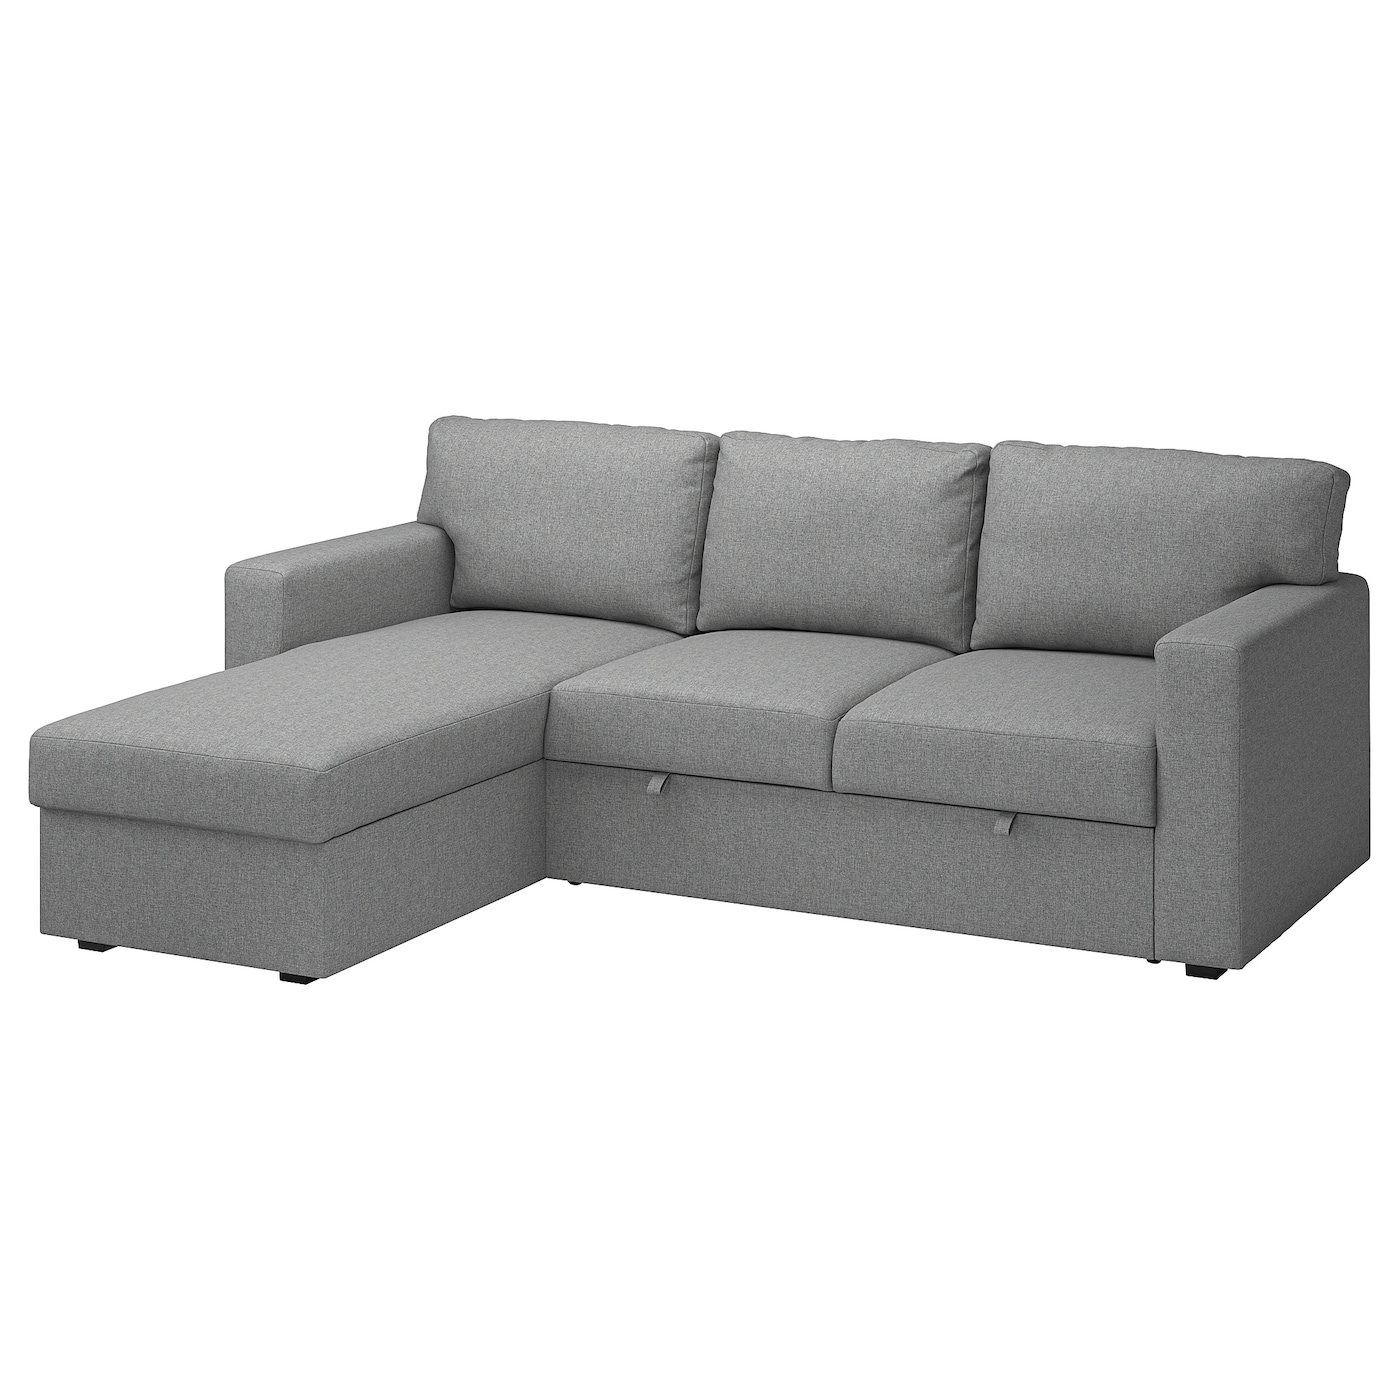 БОРСЛОВ 3-местный диван-кровать + диван, Тибблби бежевый/серый BÅRSLÖV IKEA диван кровать балу brown